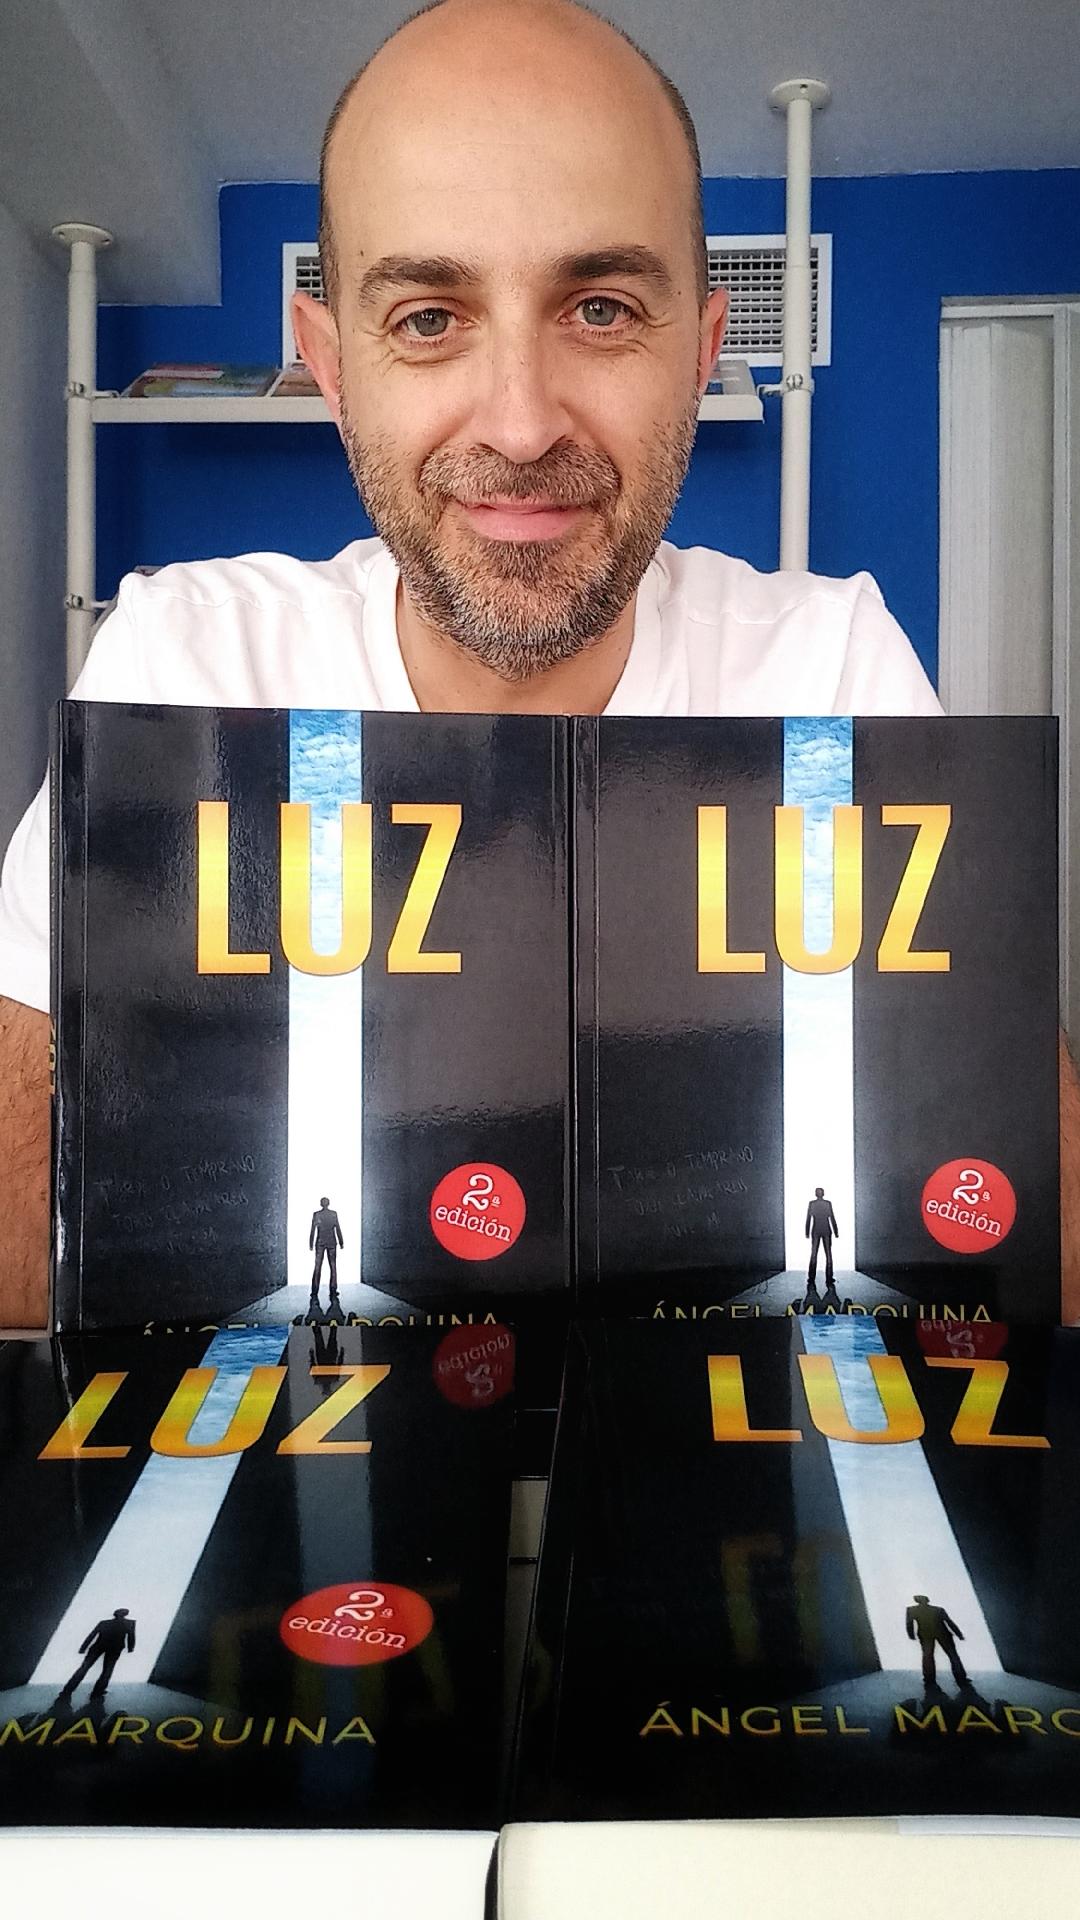 Entrevistamos al escritor Ángel Marquina, nos presenta su obra “Luz”